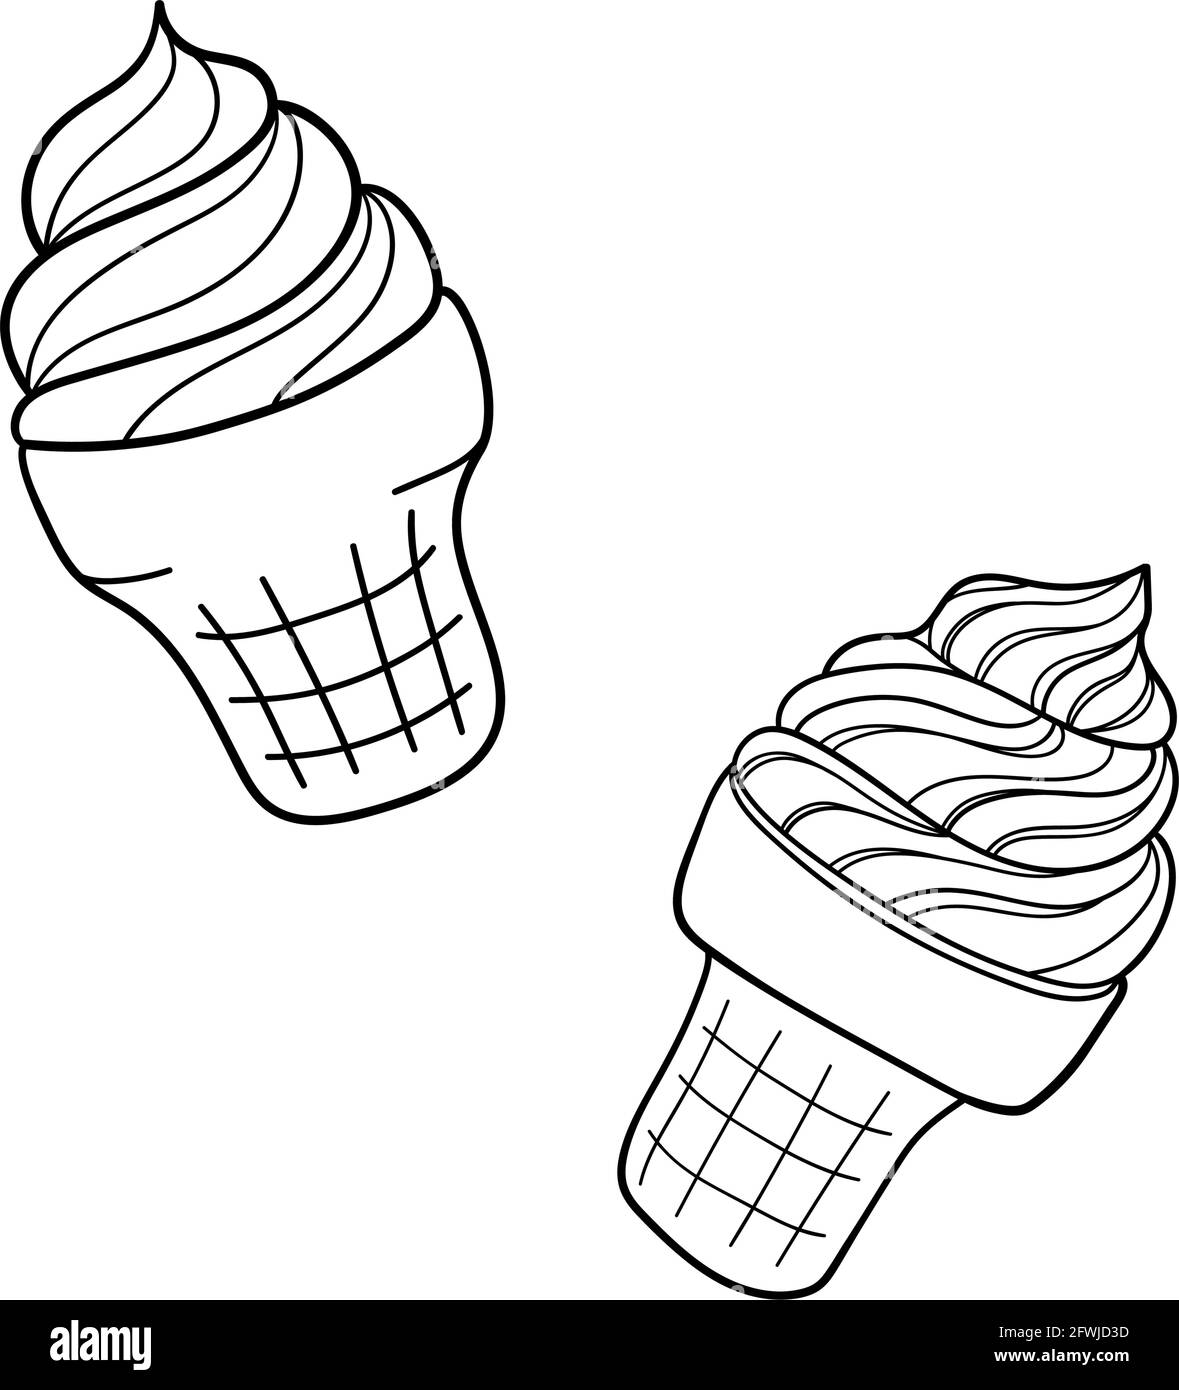 Handgezeichnetes Eis. Design Skizzenelement für Menü Café, Bistro, Restaurant, Etikett und Verpackung. Vektor-isolierte Illustration. Stock Vektor